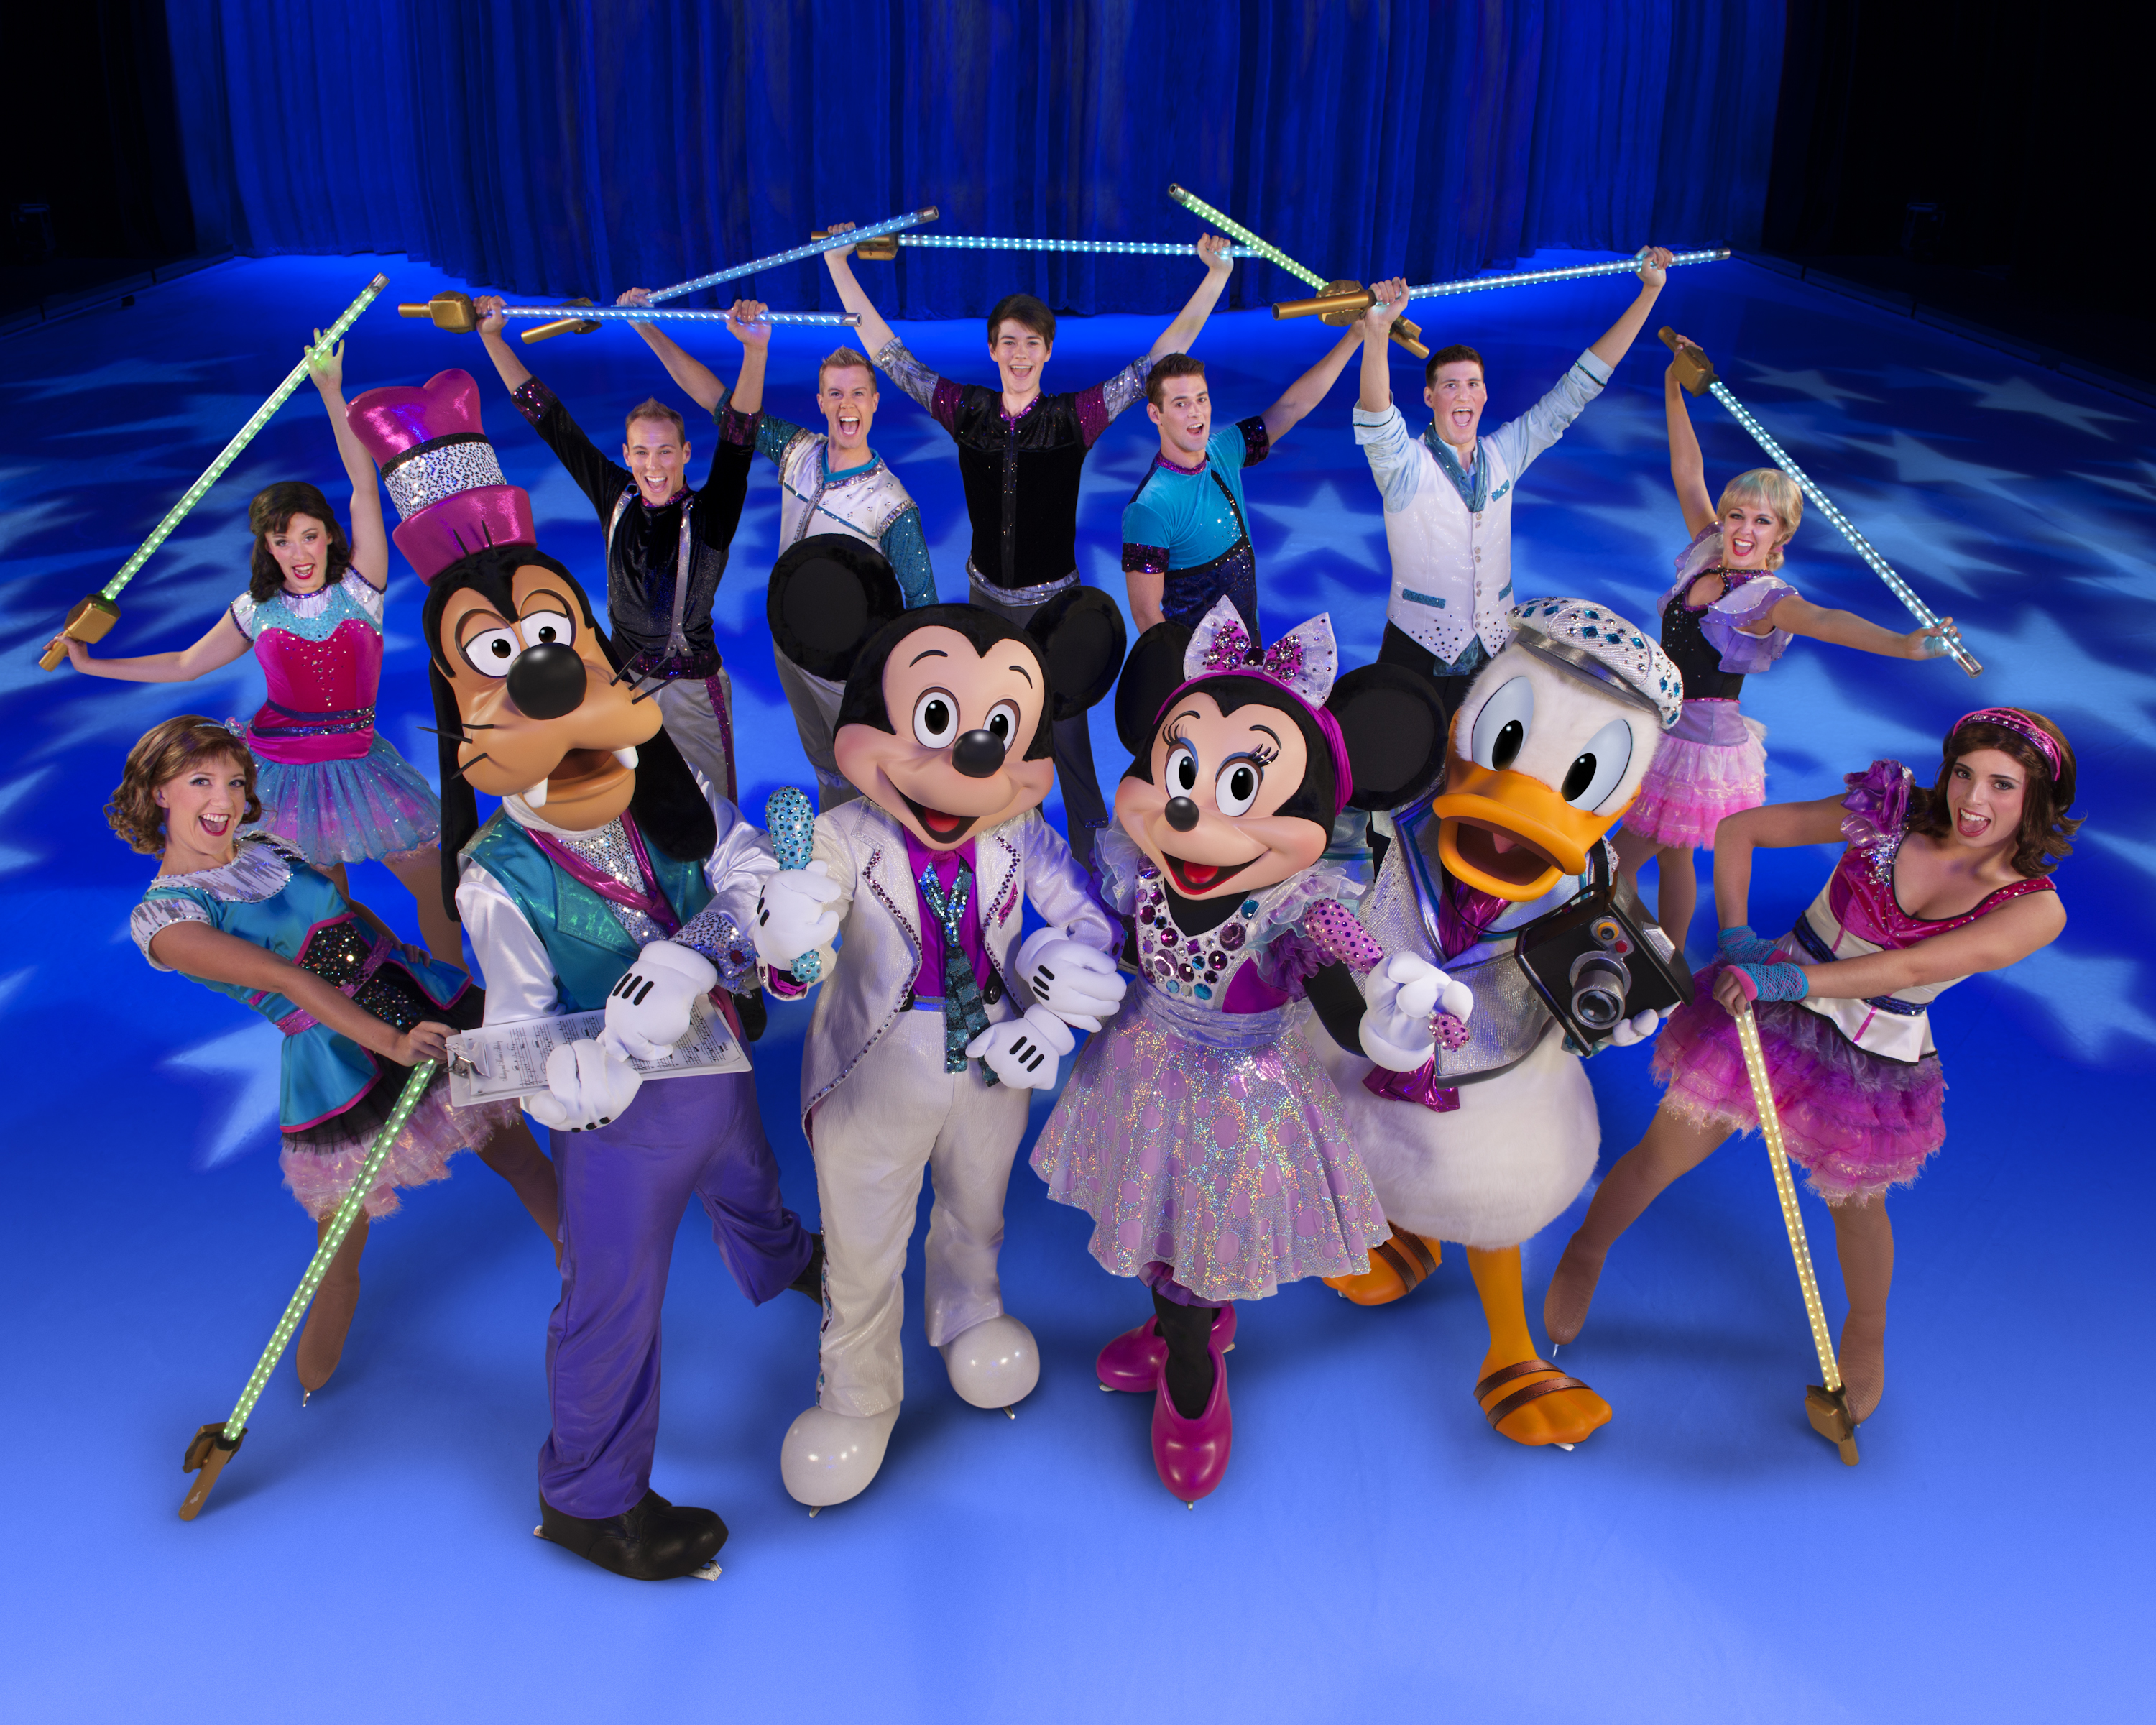 Triff die Stars deiner Kindheit bei dem Eisfestival „Disney on Ice“! Noch bis 18.11.!